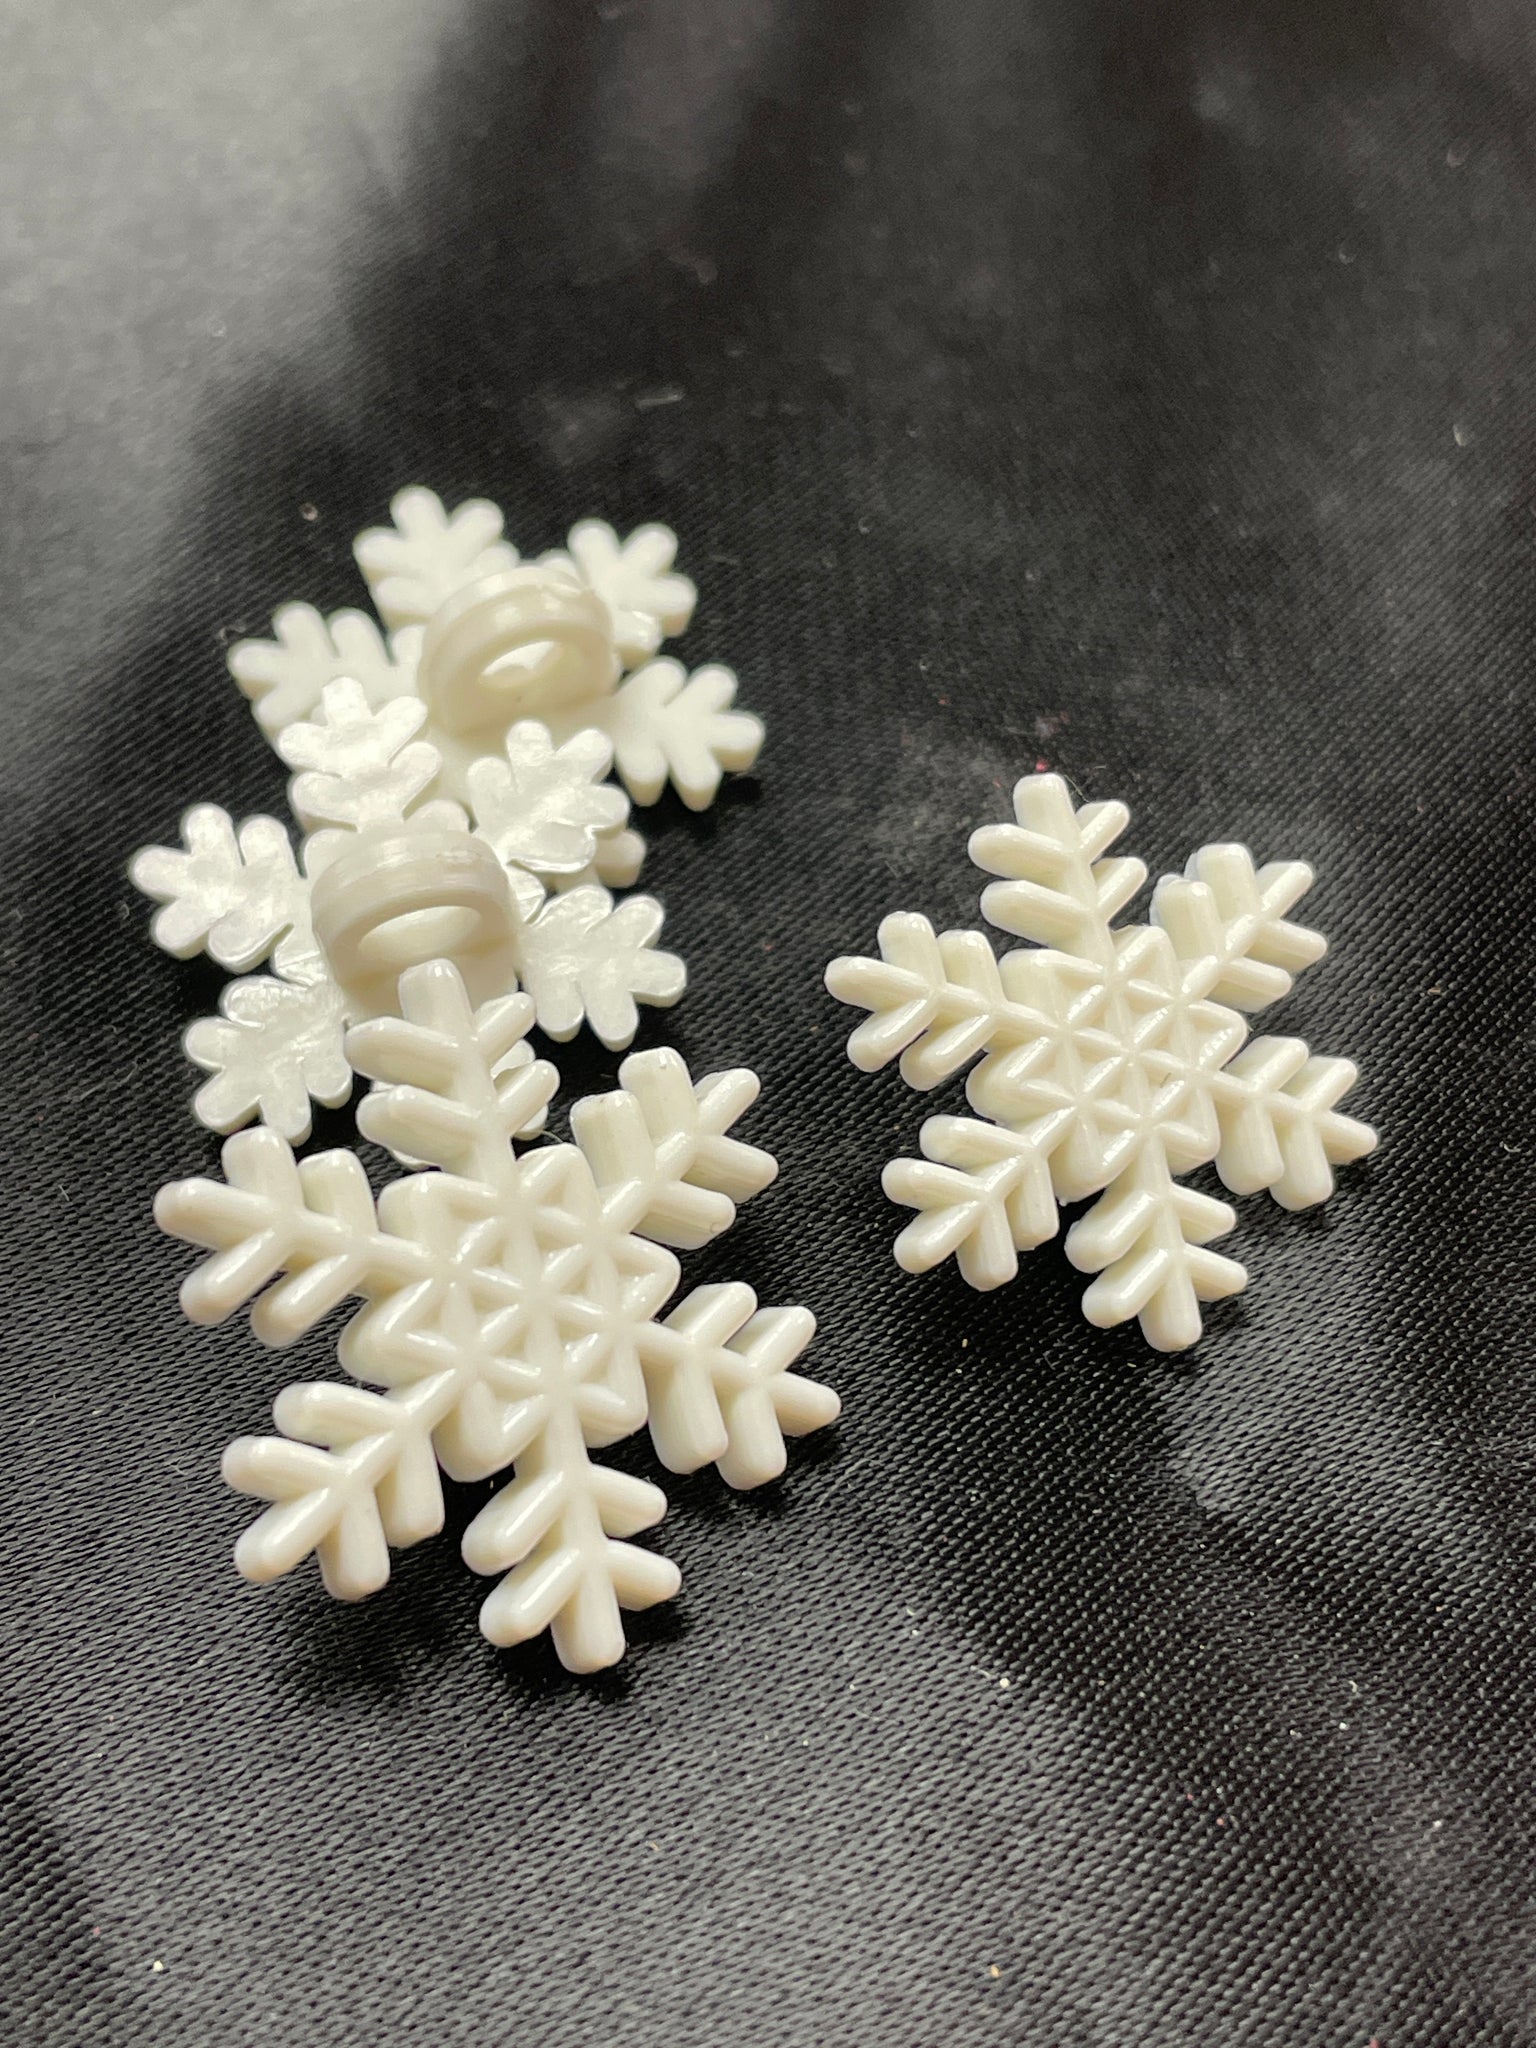 Button Set of 4 Plastic Vintage - White Snowflakes